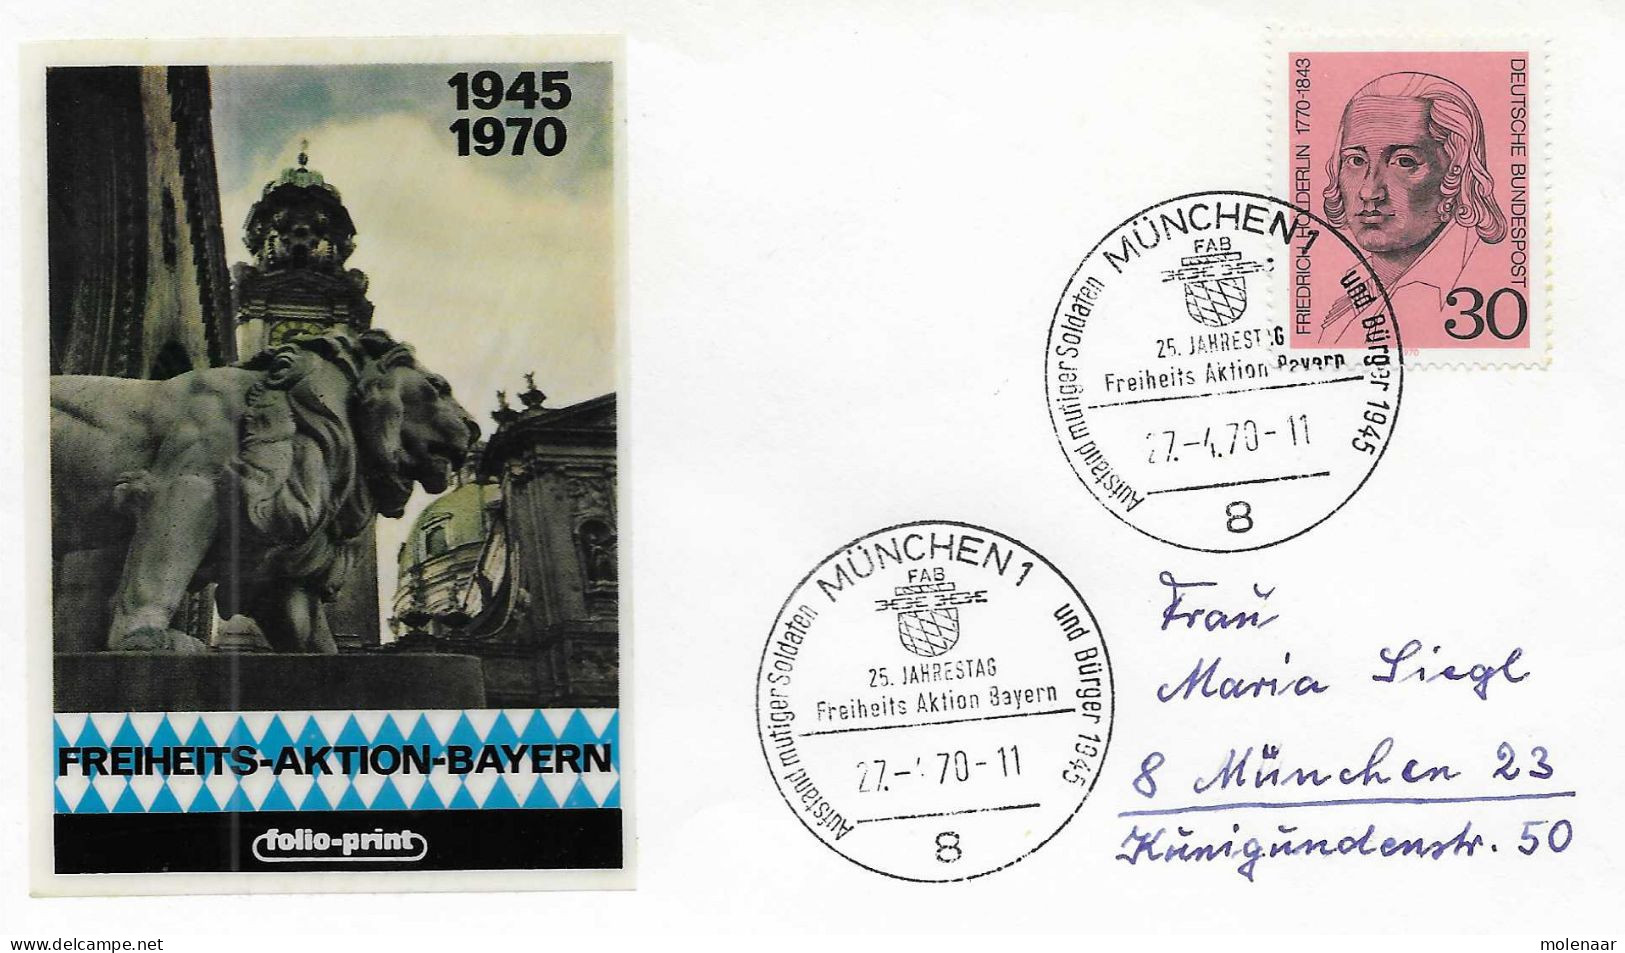 Postzegels > Europa > Duitsland > Berlijn > 1980-1990 > Brief Met No. 618  (17244) - Covers & Documents